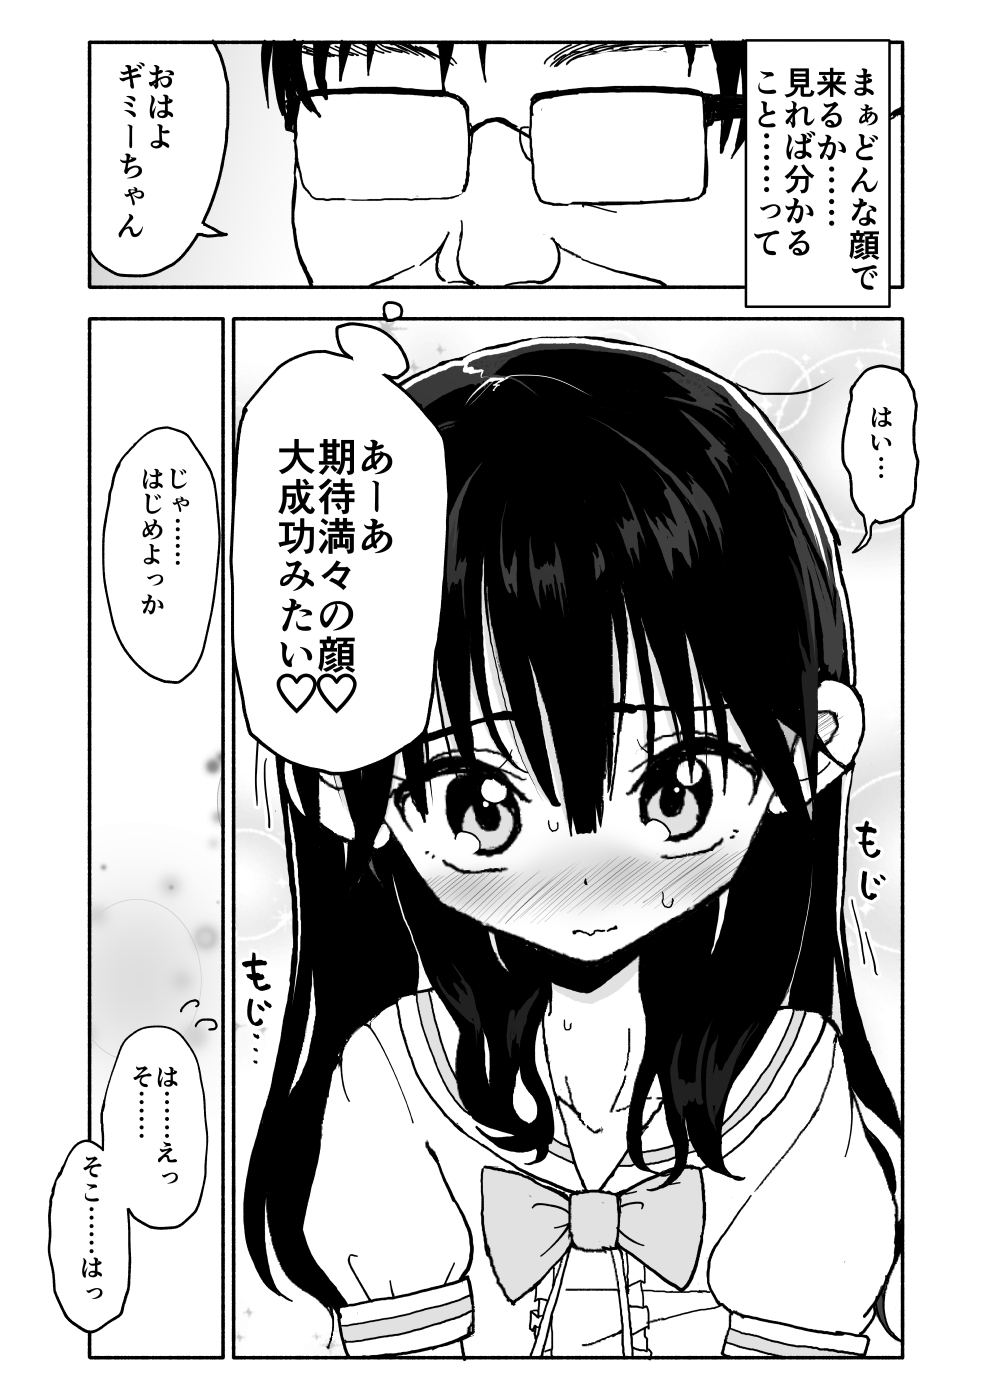 [Futotta Obasan] Okashi Tsukuri Idol ☆ Gimi ! Ecchi na Himitsu no Tokkun manga page 26 full